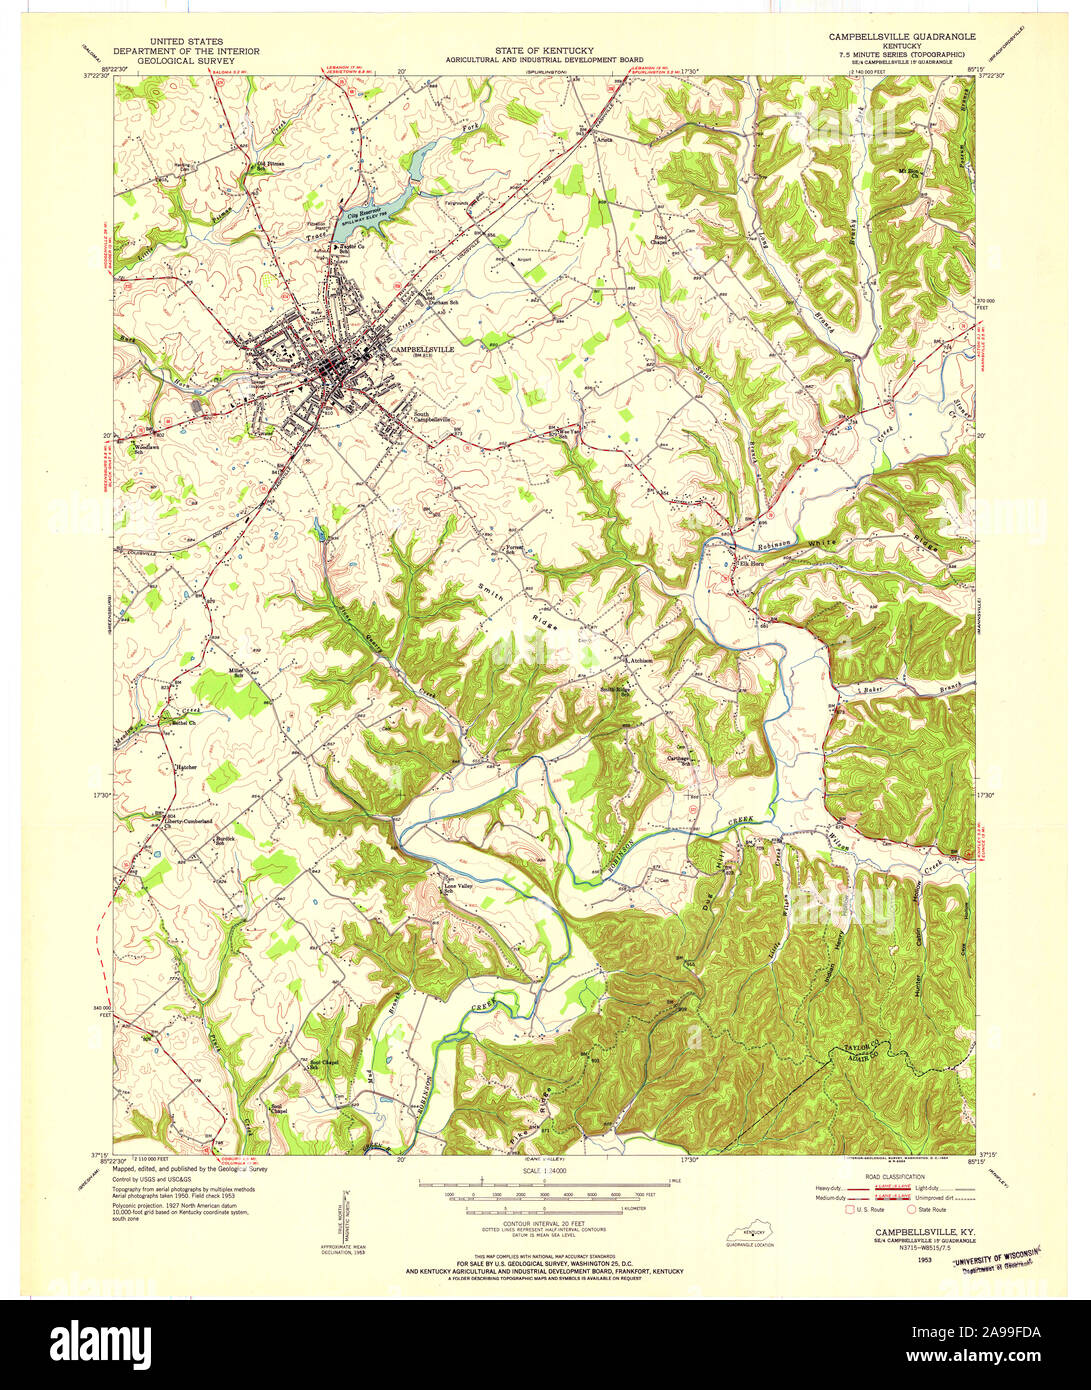 Usgs Topo Map Kentucky Ky Campbellsville 708313 1953 24000 2A99FDA 